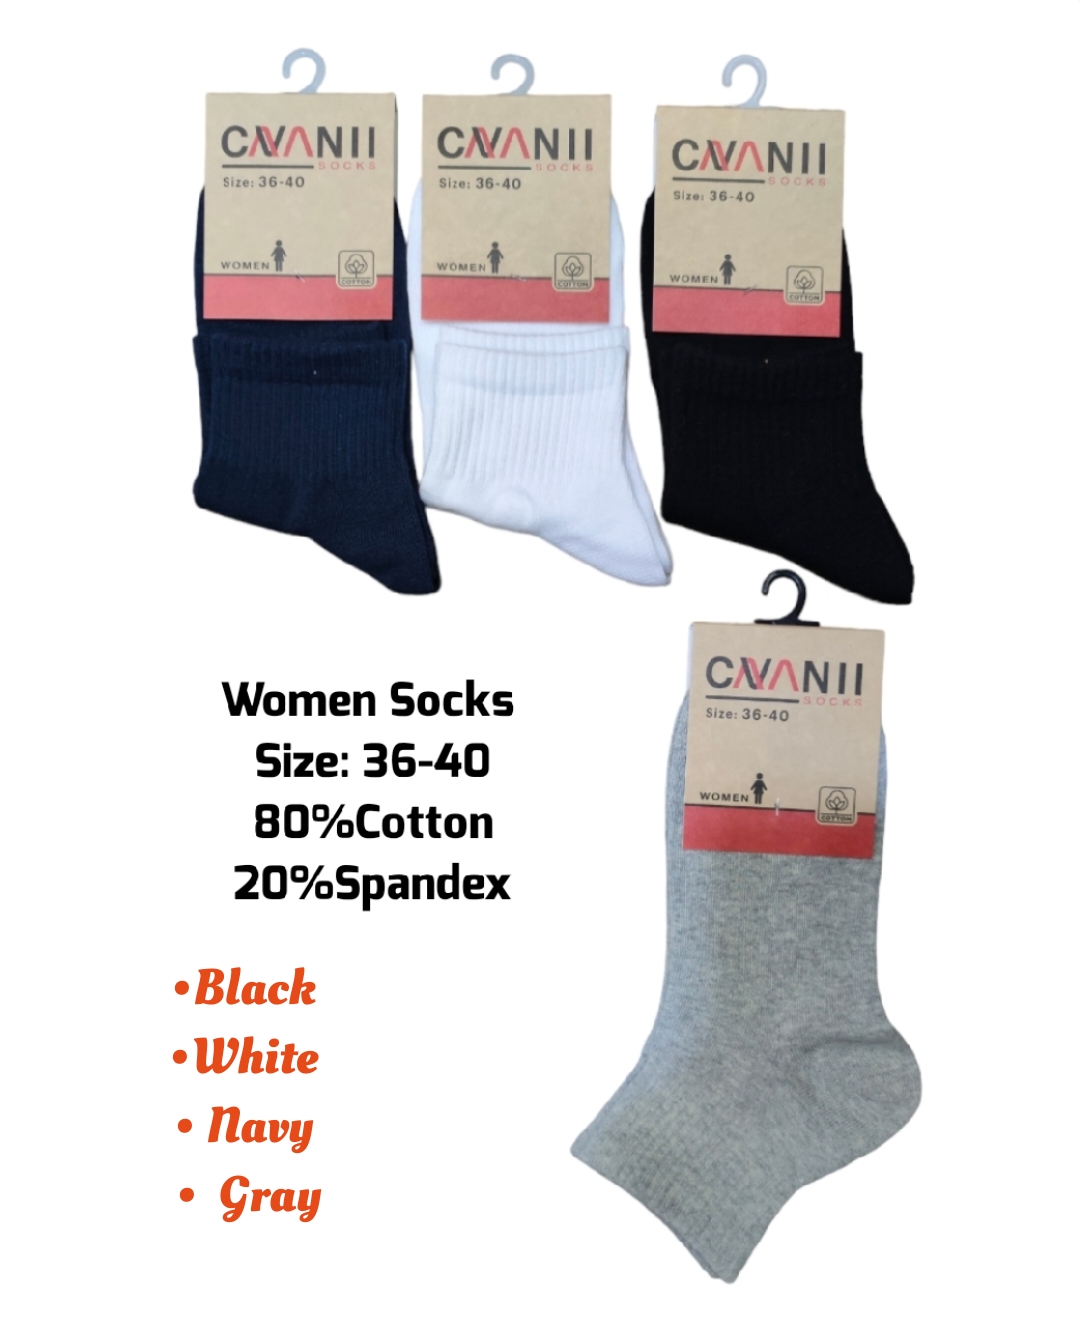 Women's Sport socks